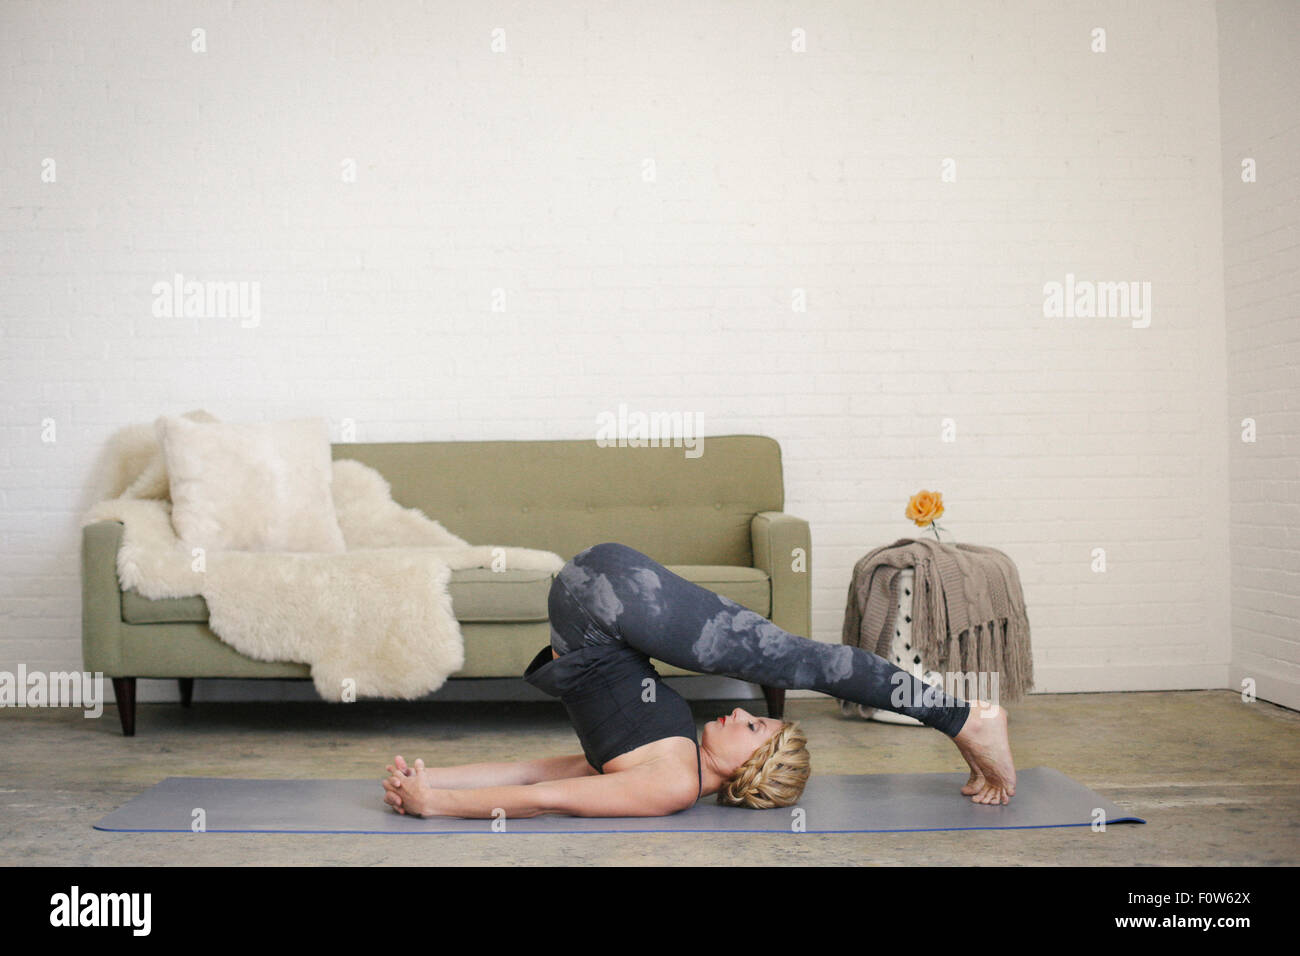 Une femme blonde dans un justaucorps noir et leggings, allongé sur un tapis de yoga dans une salle, faire du yoga, ses jambes se pencha au-dessus de sa tête. Banque D'Images